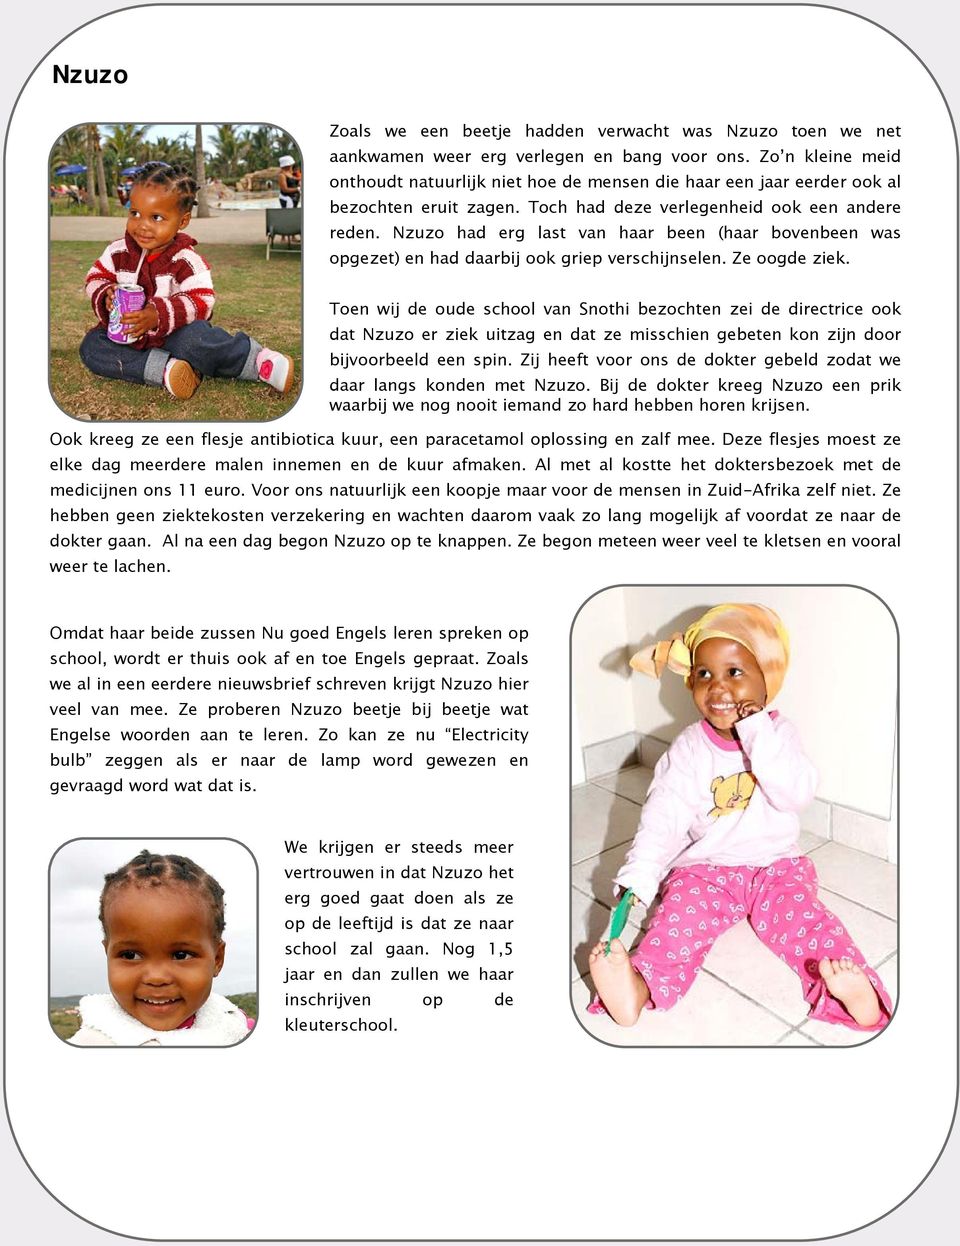 Nzuzo had erg last van haar been (haar bovenbeen was opgezet) en had daarbij ook griep verschijnselen. Ze oogde ziek. Ook kreeg ze een flesje antibiotica kuur, een paracetamol oplossing en zalf mee.